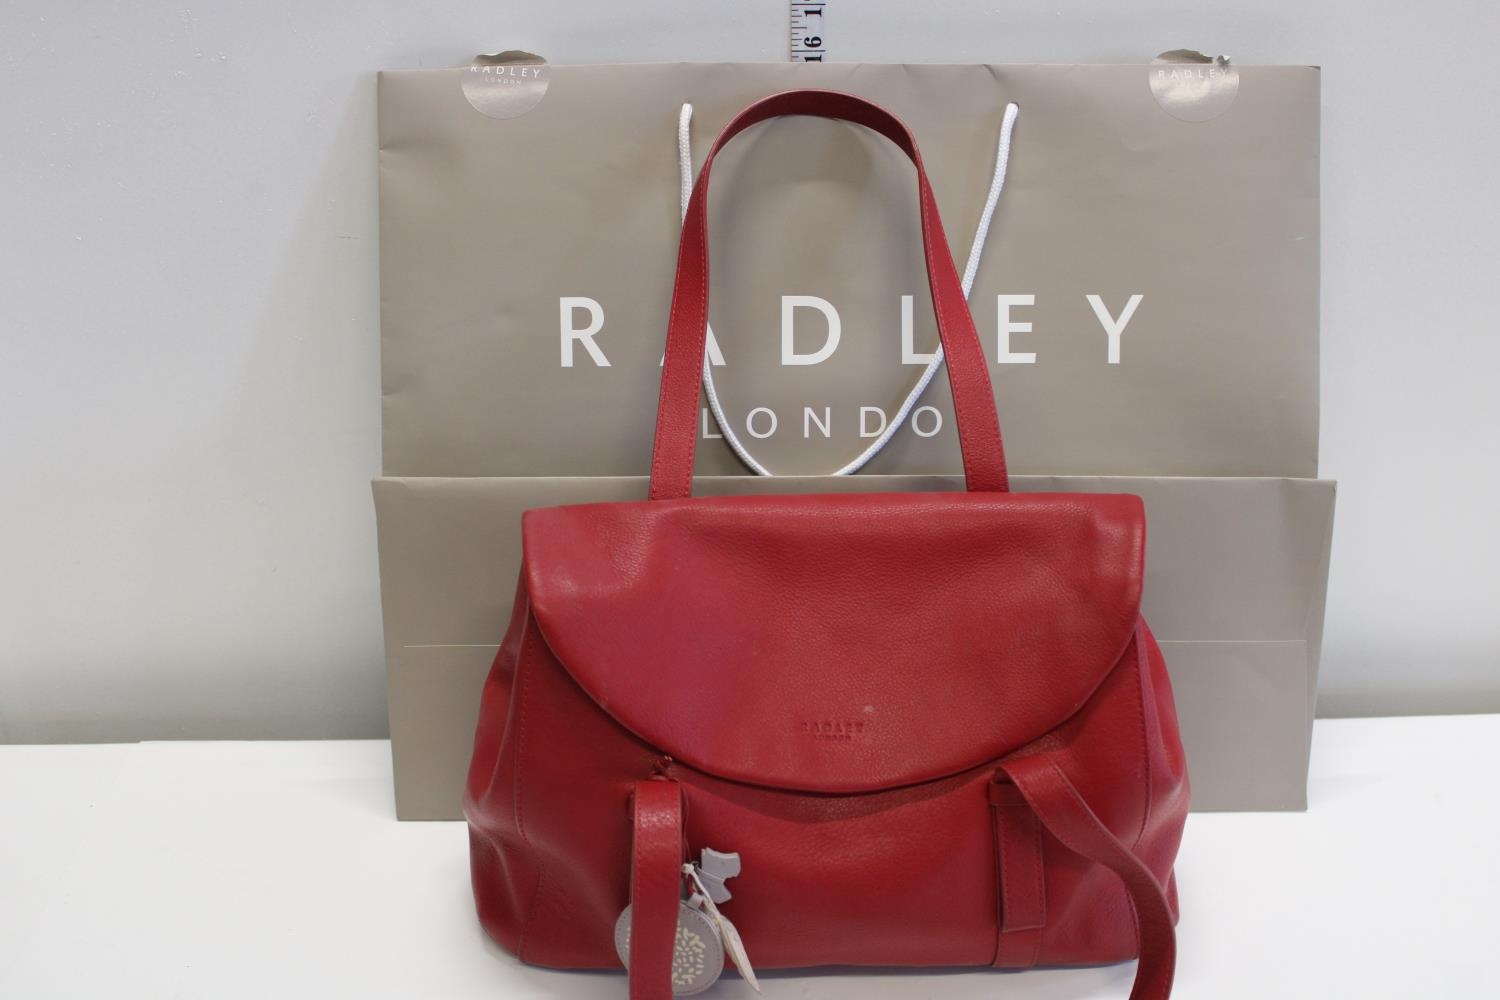 A as new Radley Ladies handbag